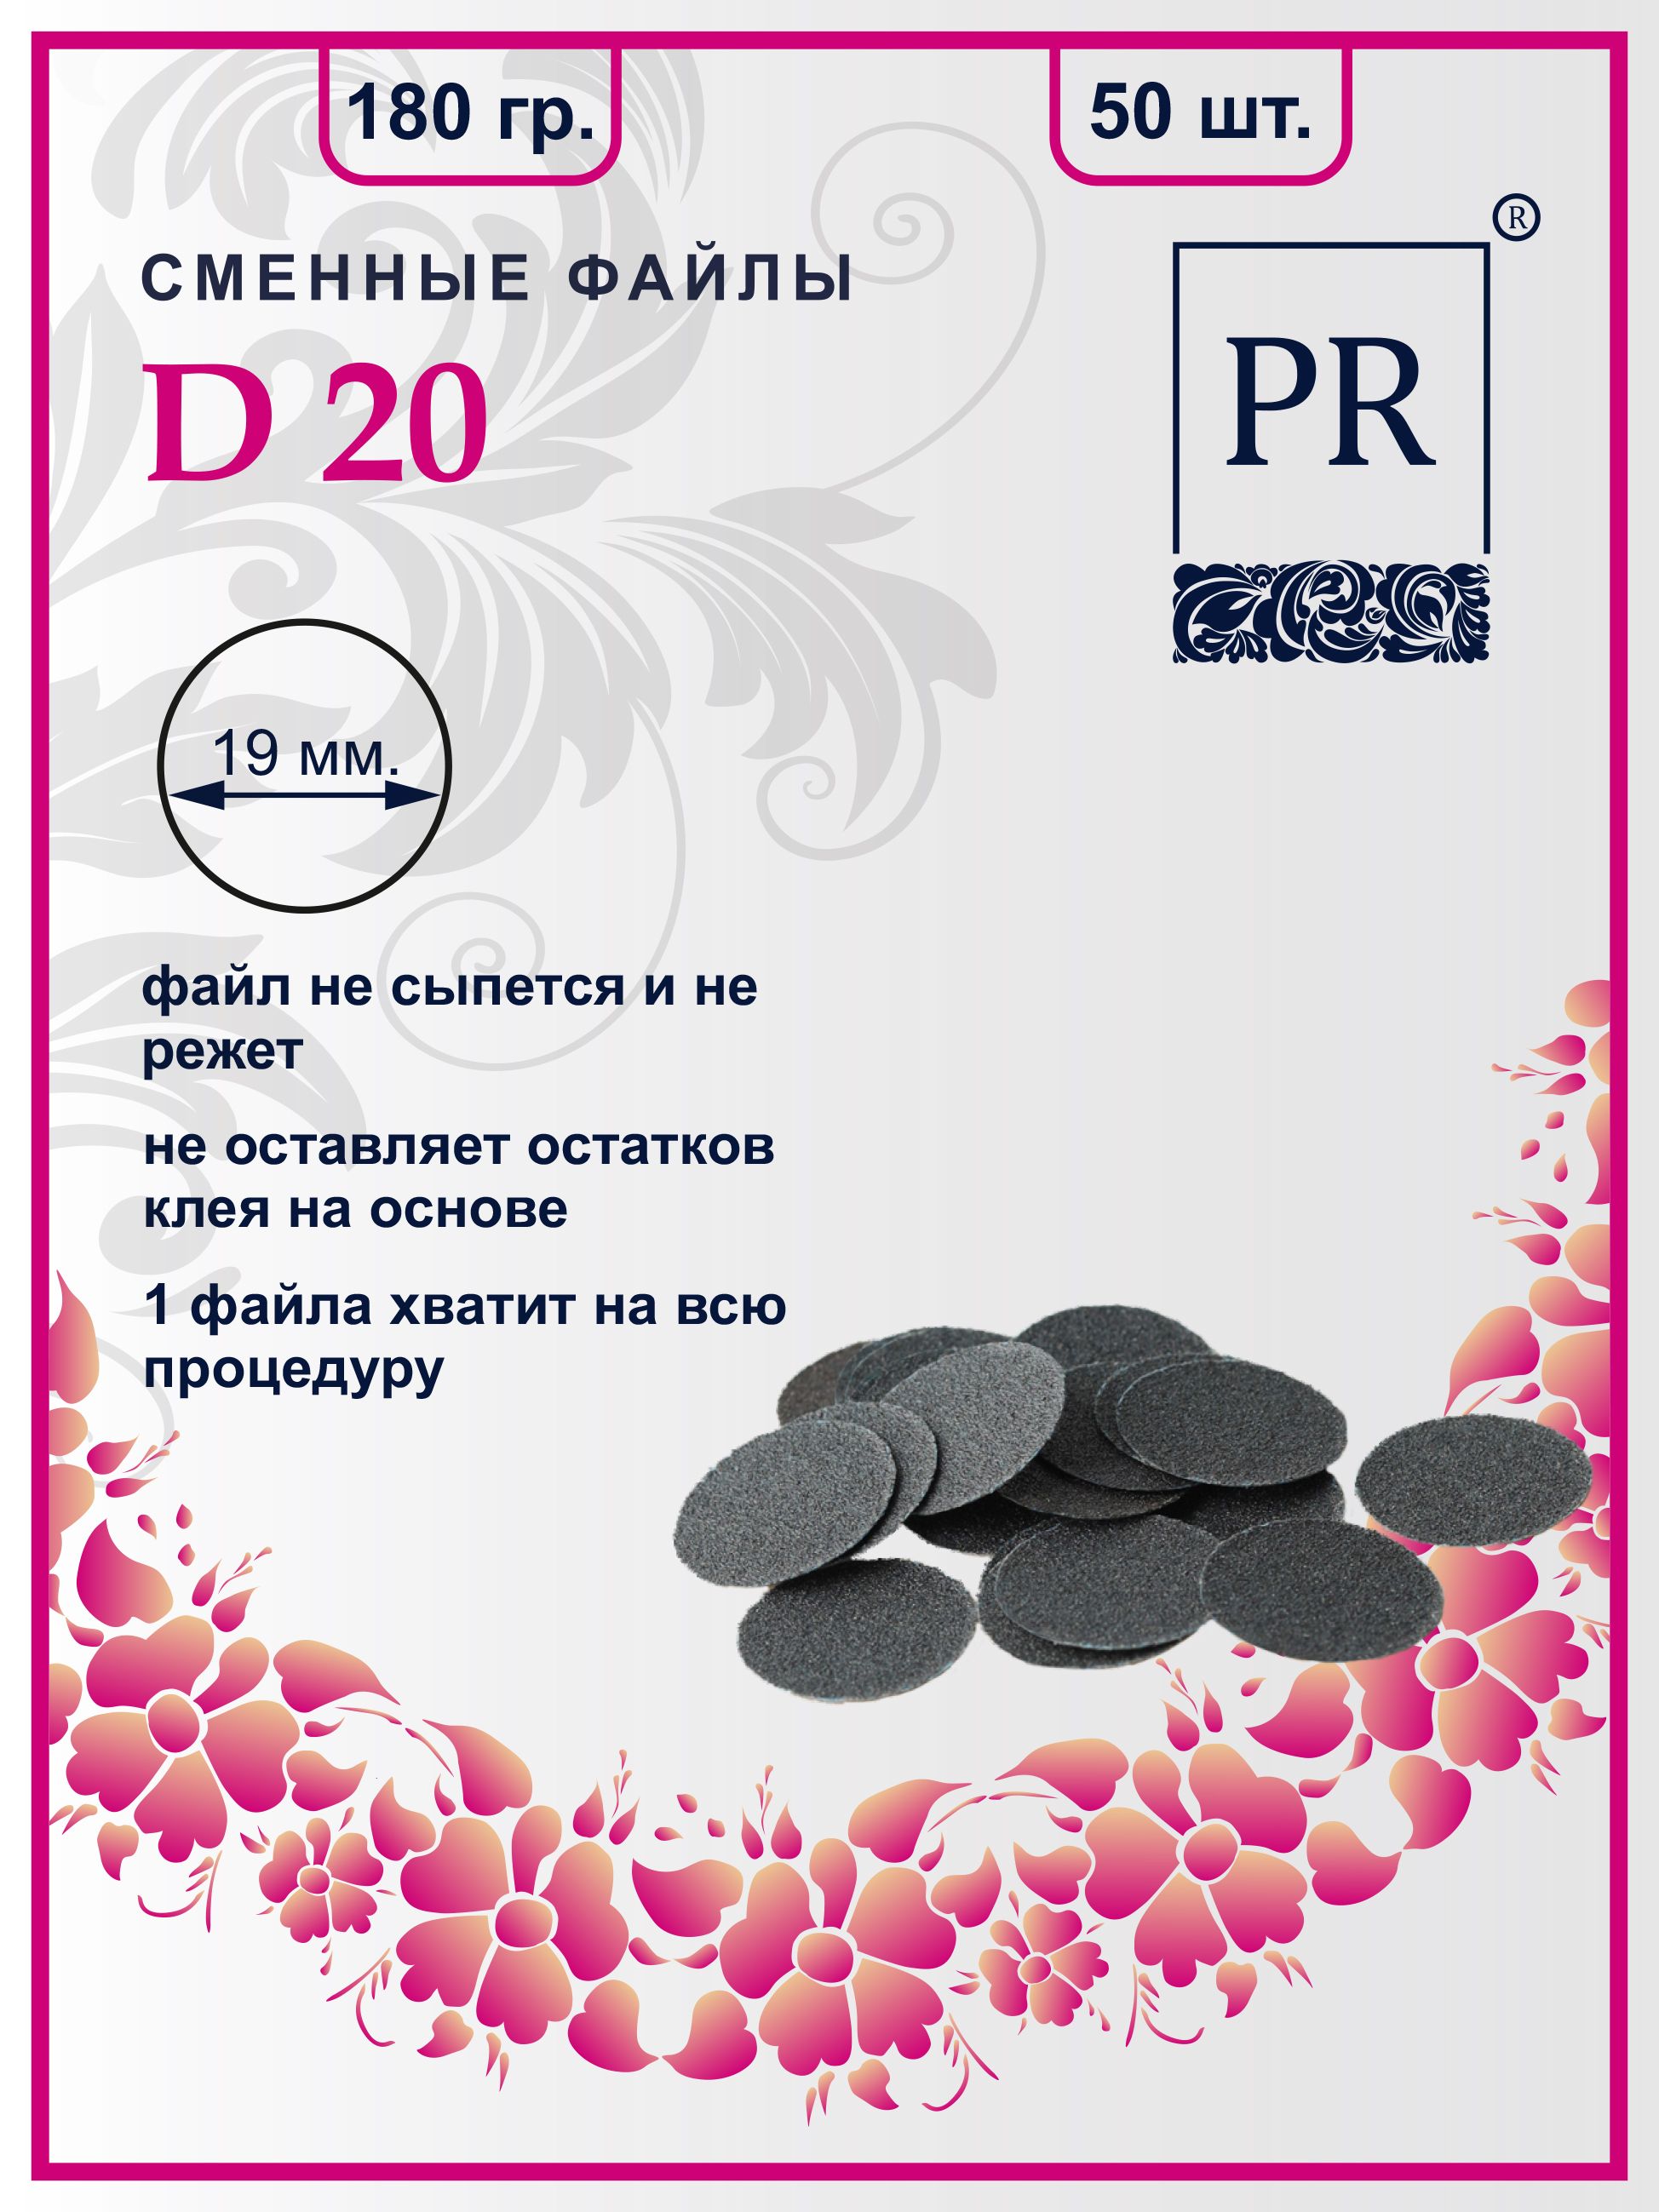 Сменные файлы Pilochki Russia диски для педикюра для диска М 180 грит 50 штук пакеты для собачьих экскрементов ferplast 2 рулона по 24 пакета в ассортименте